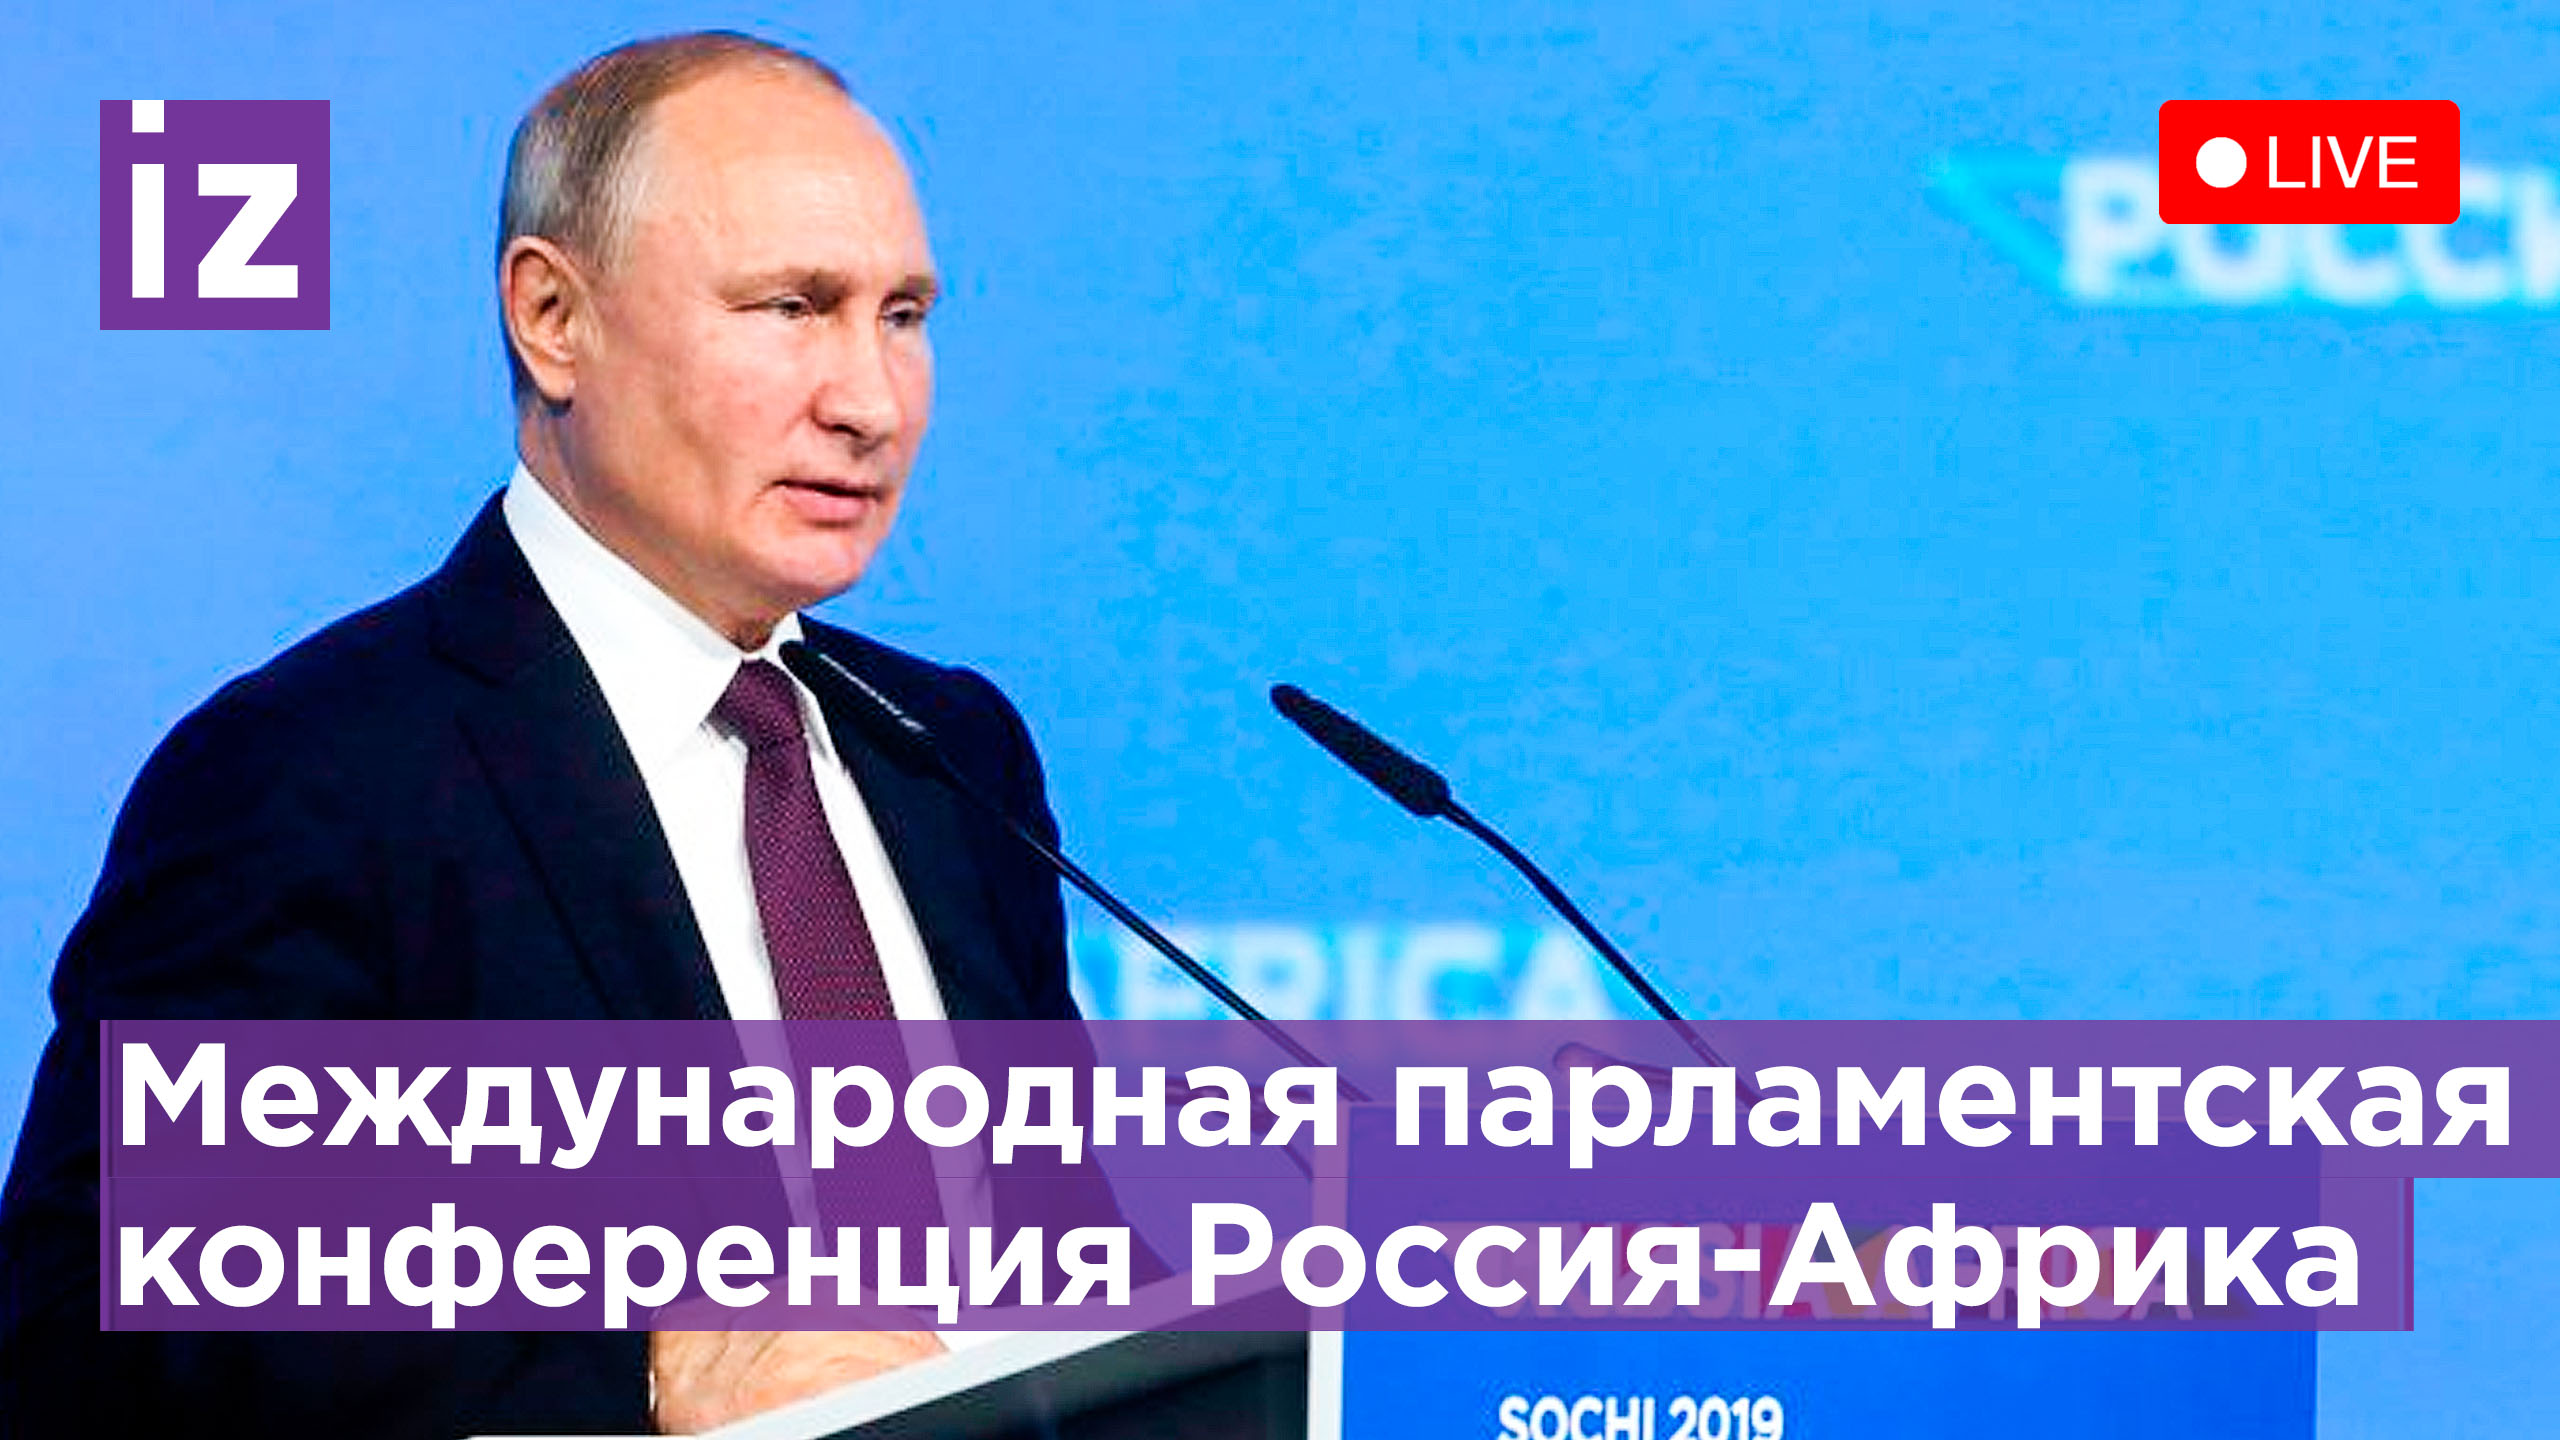 Владимир Путин на второй Международной парламентской конференции Россия-Африка. Прямая трансляция